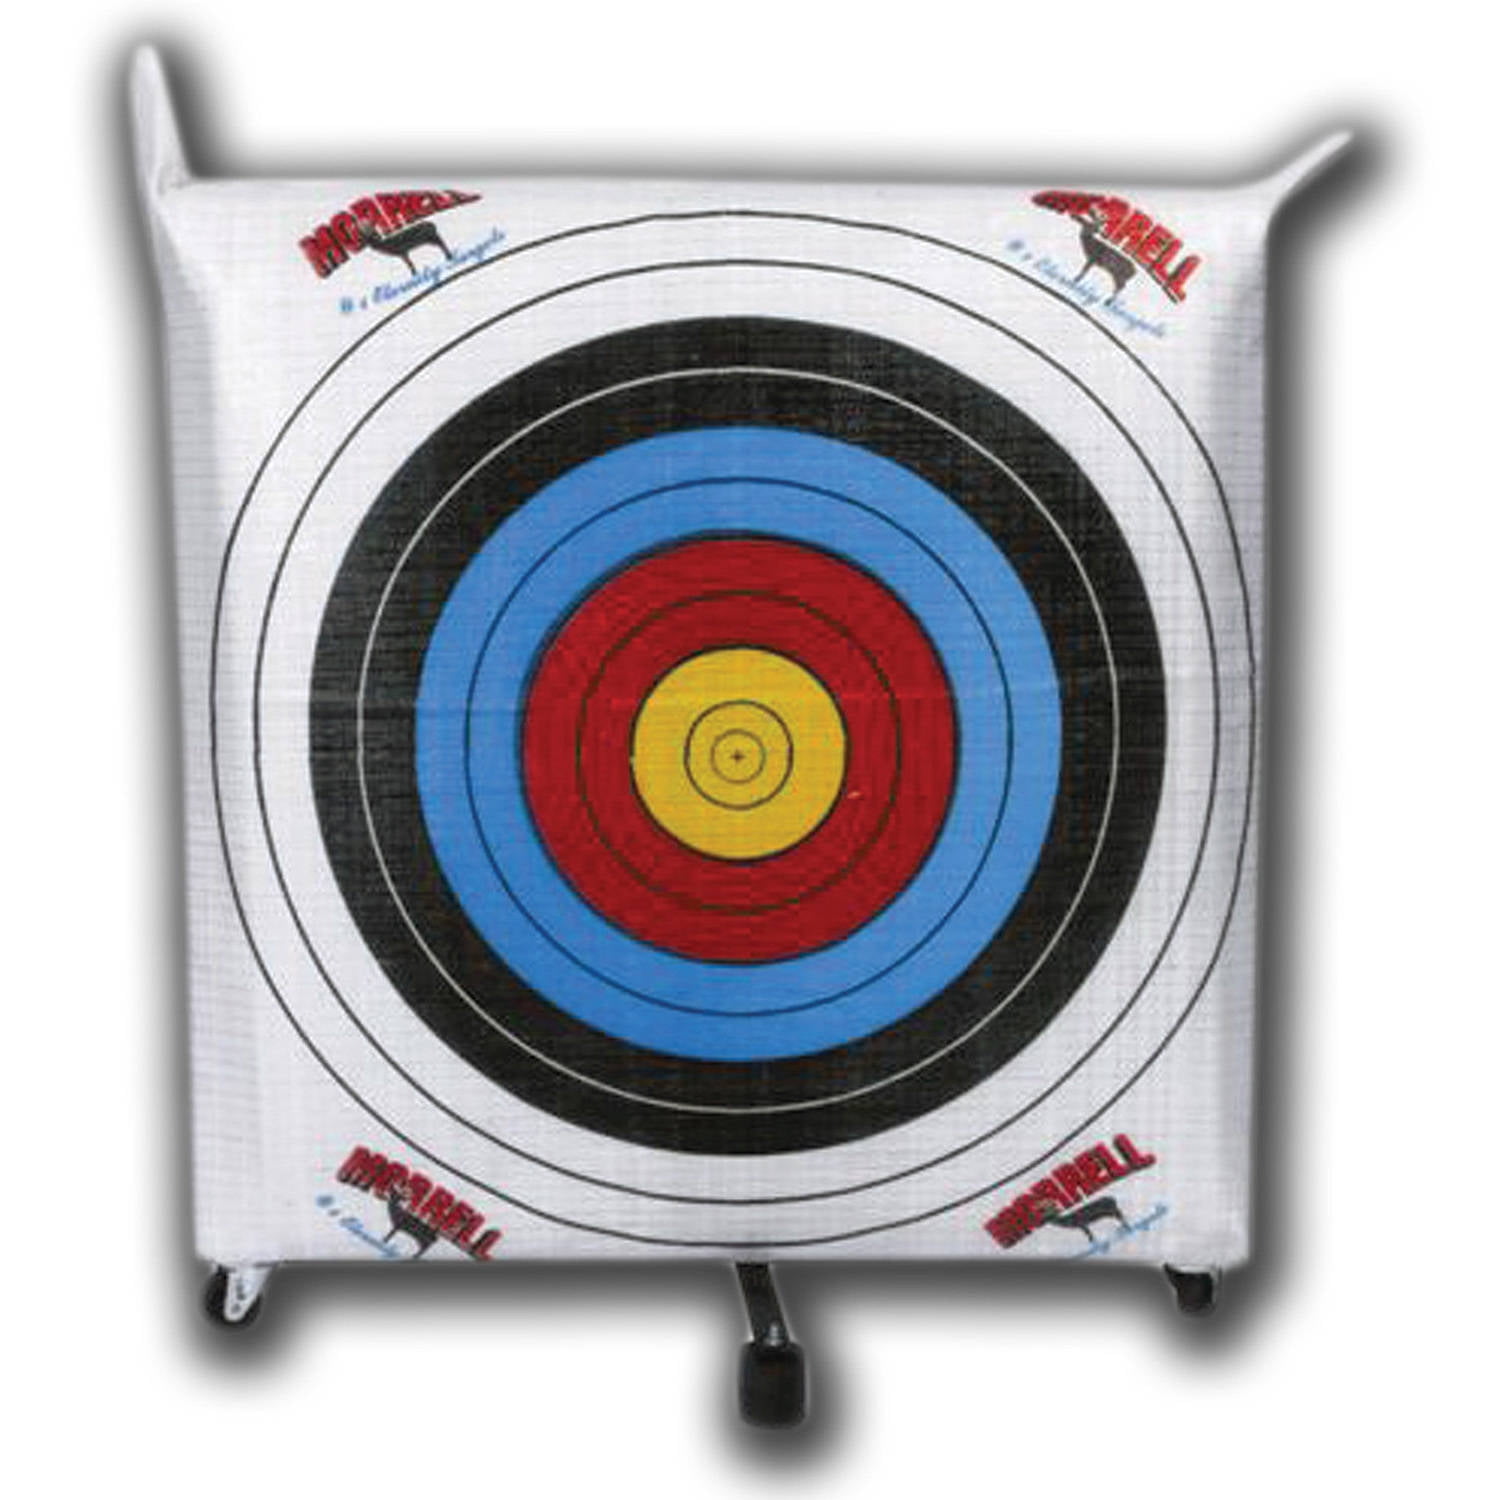 Bear Archery Foam Target 36" A736 for sale online